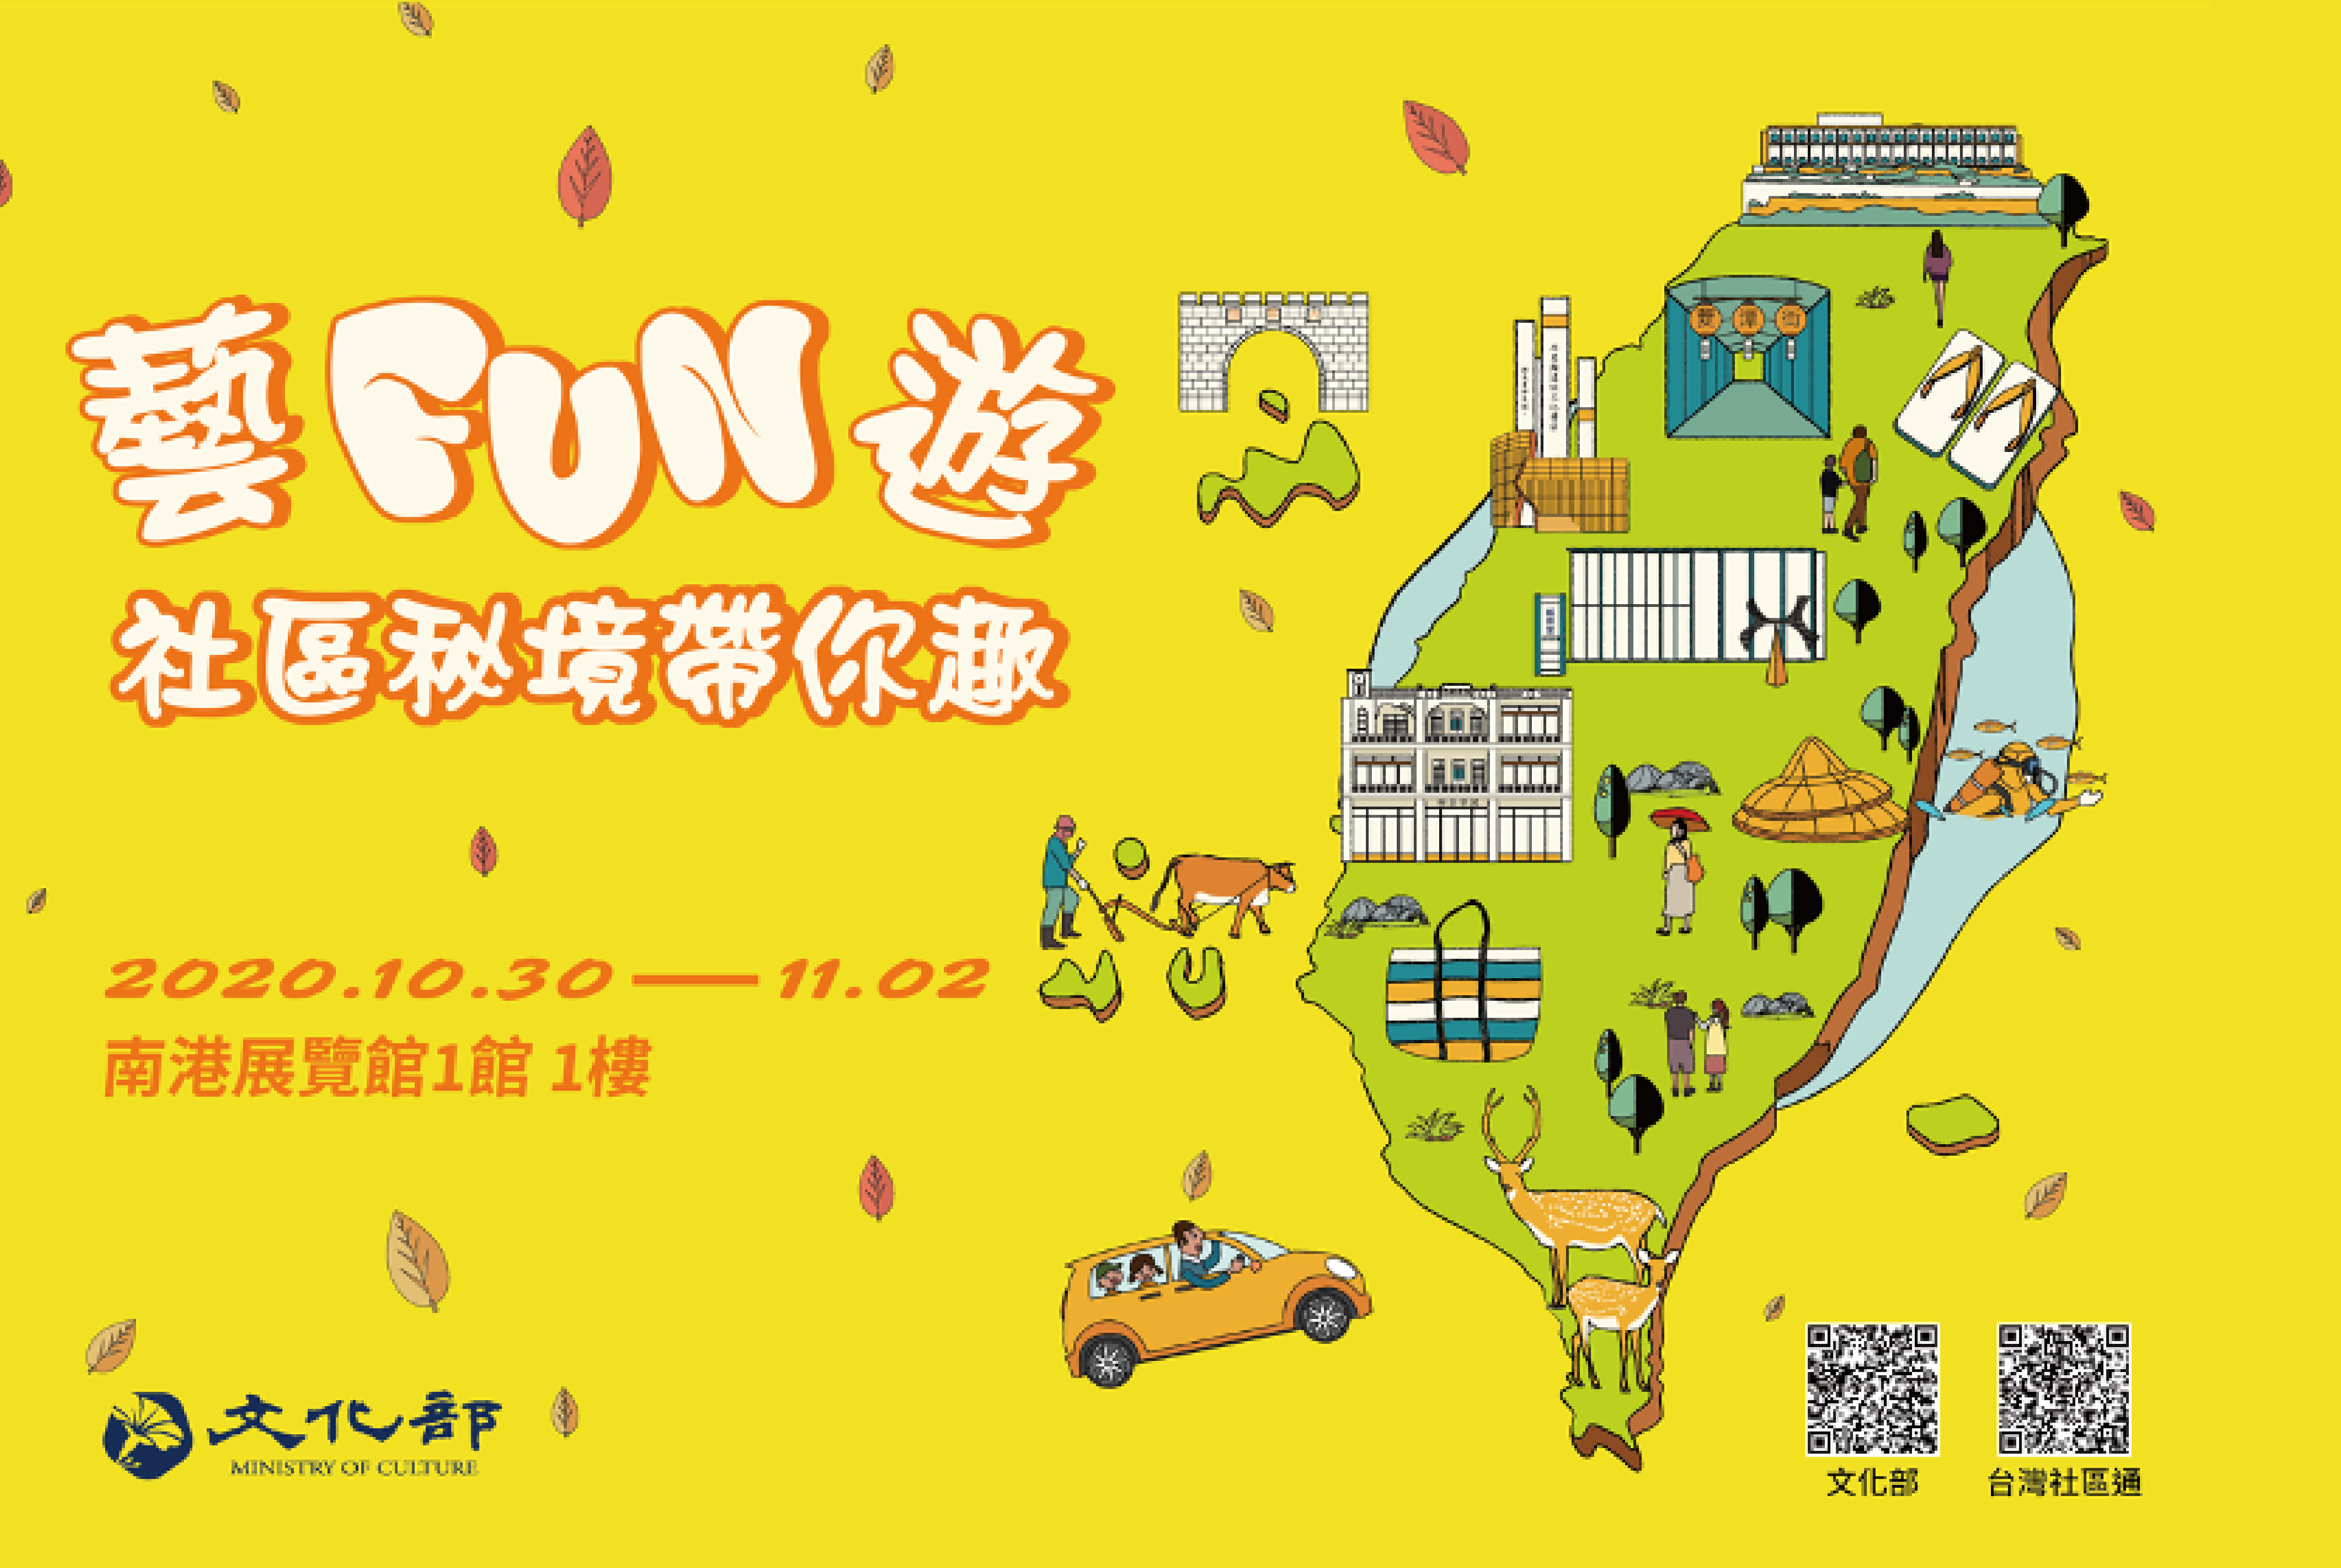 2020 ITF台北國際旅展 Ｘ「藝fun遊！」社區秘境帶你趣～ 